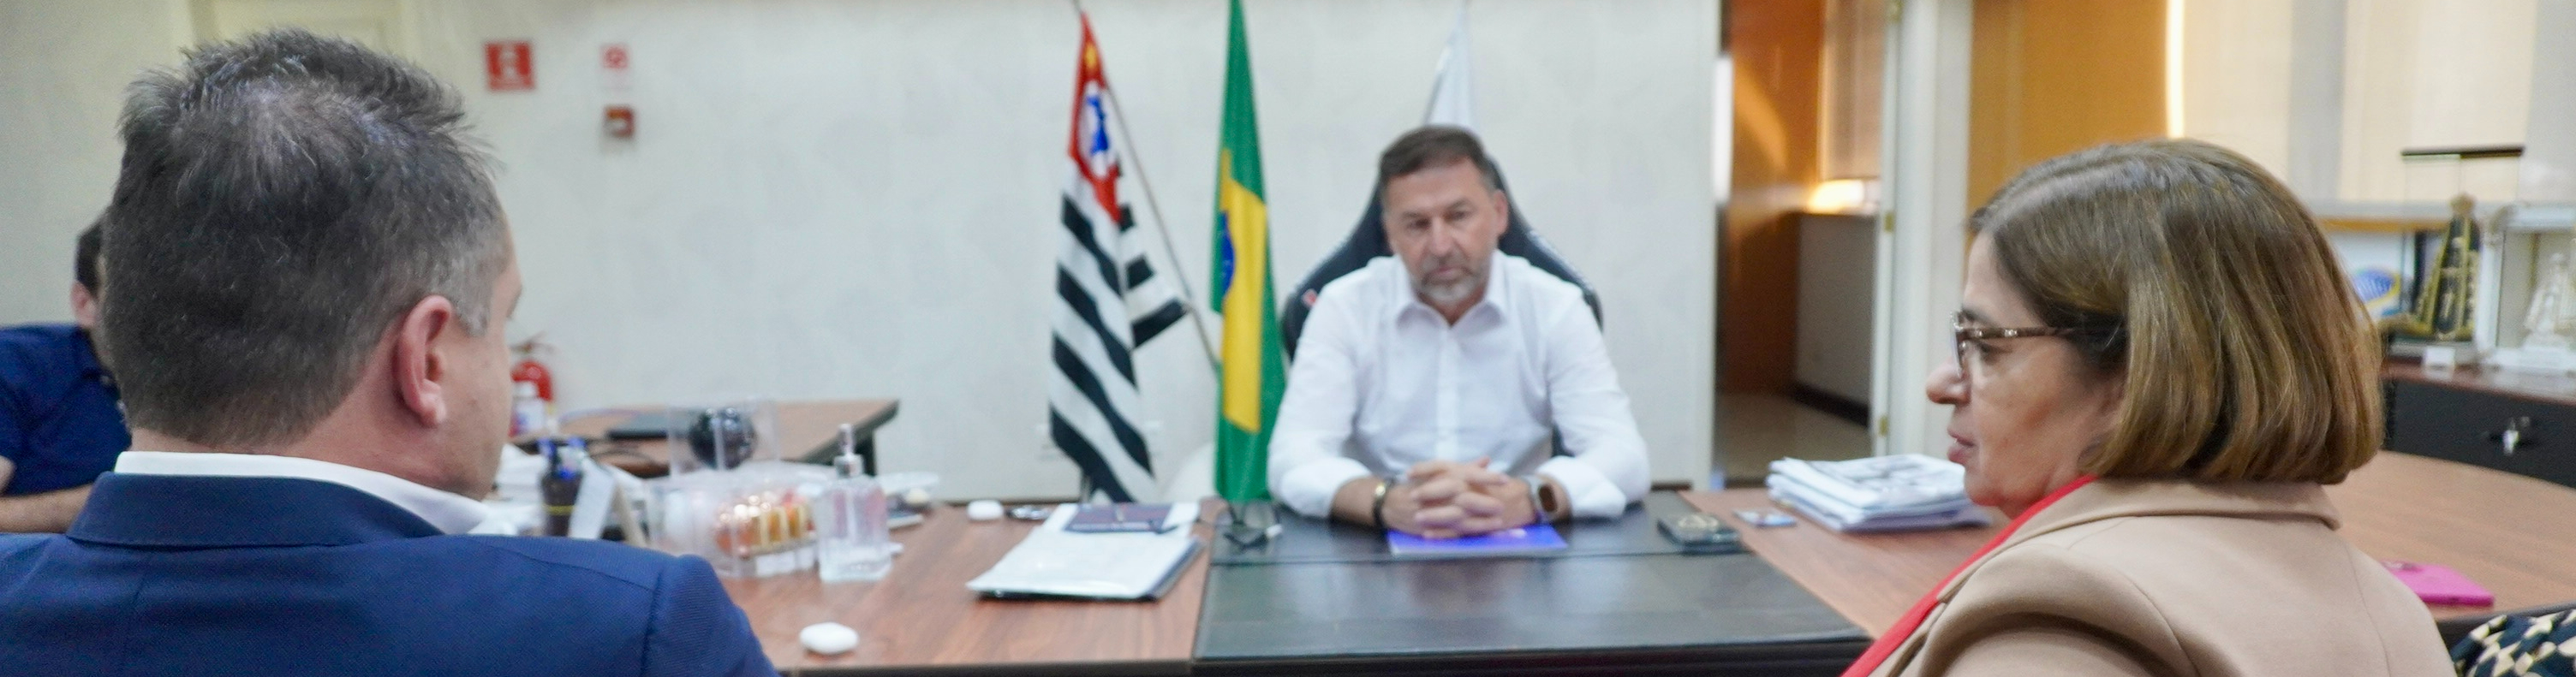 Ministra das Mulheres tem agenda com presidente Augusto Melo, do Corinthians